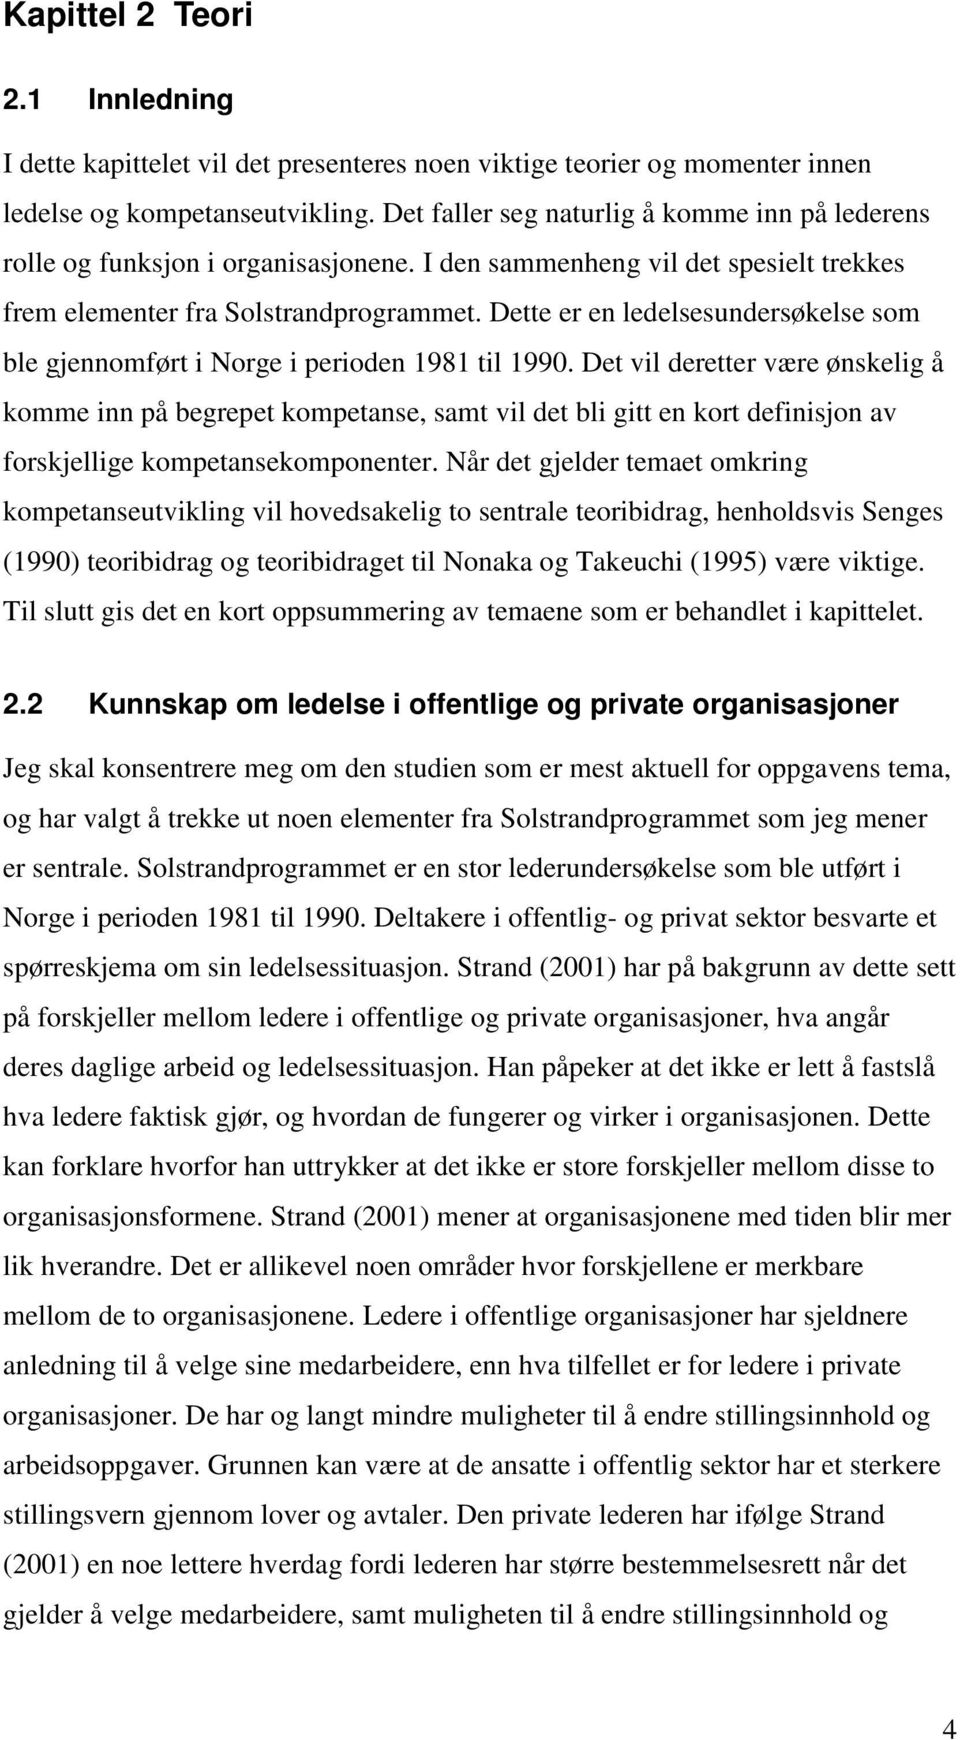 Dette er en ledelsesundersøkelse som ble gjennomført i Norge i perioden 1981 til 1990.